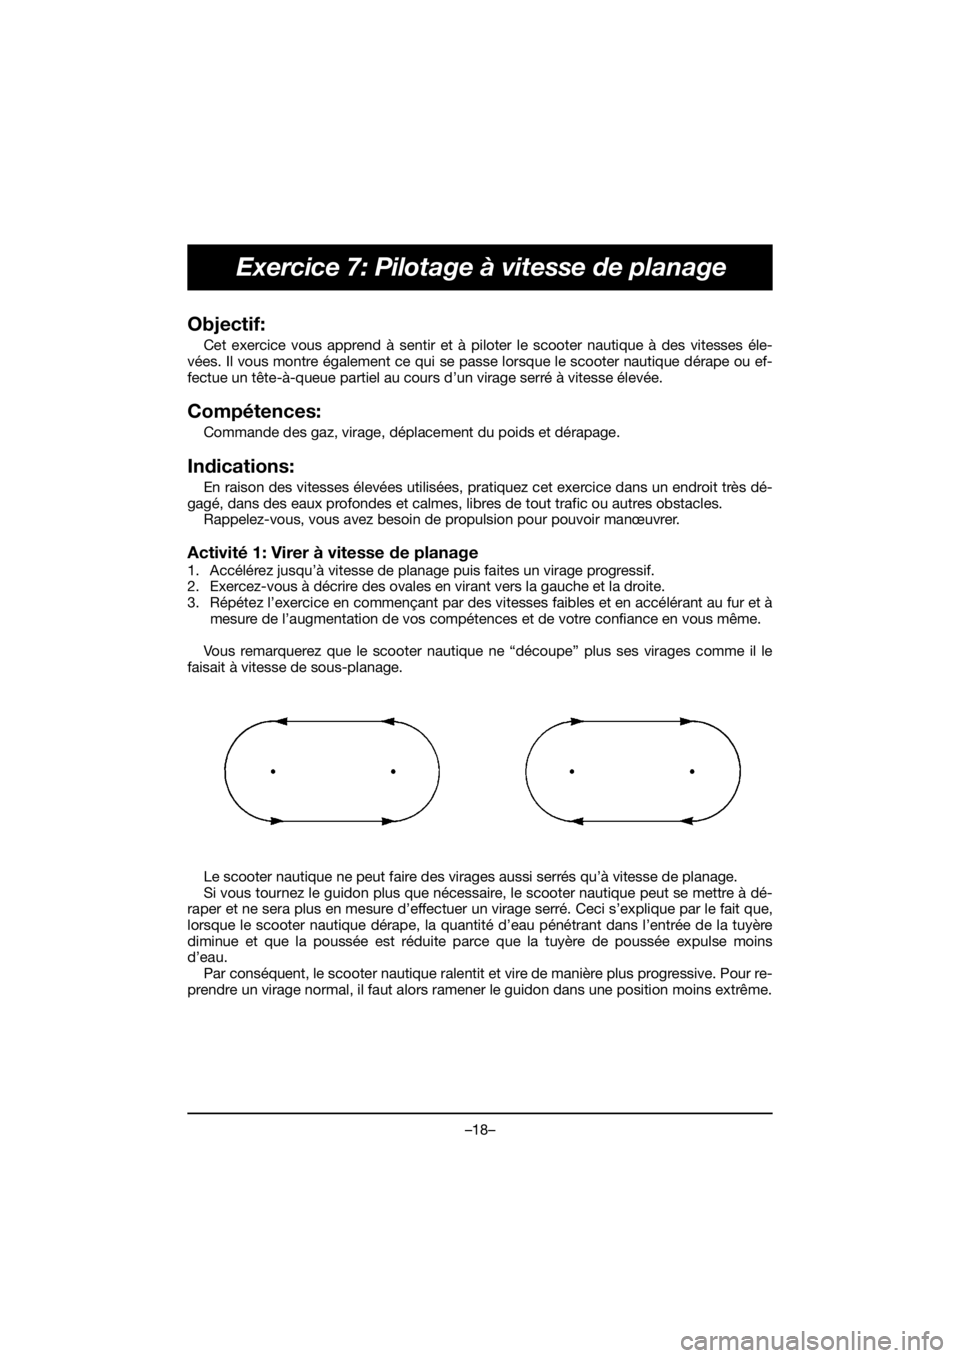 YAMAHA EX SPORT 2020  Notices Demploi (in French) –18–
Exercice 7: Pilotage à vitesse de planage
Objectif: 
Cet exercice vous apprend à sentir et à piloter le scooter nautique à des vitesses éle-
vées. Il vous montre également ce qui se pa